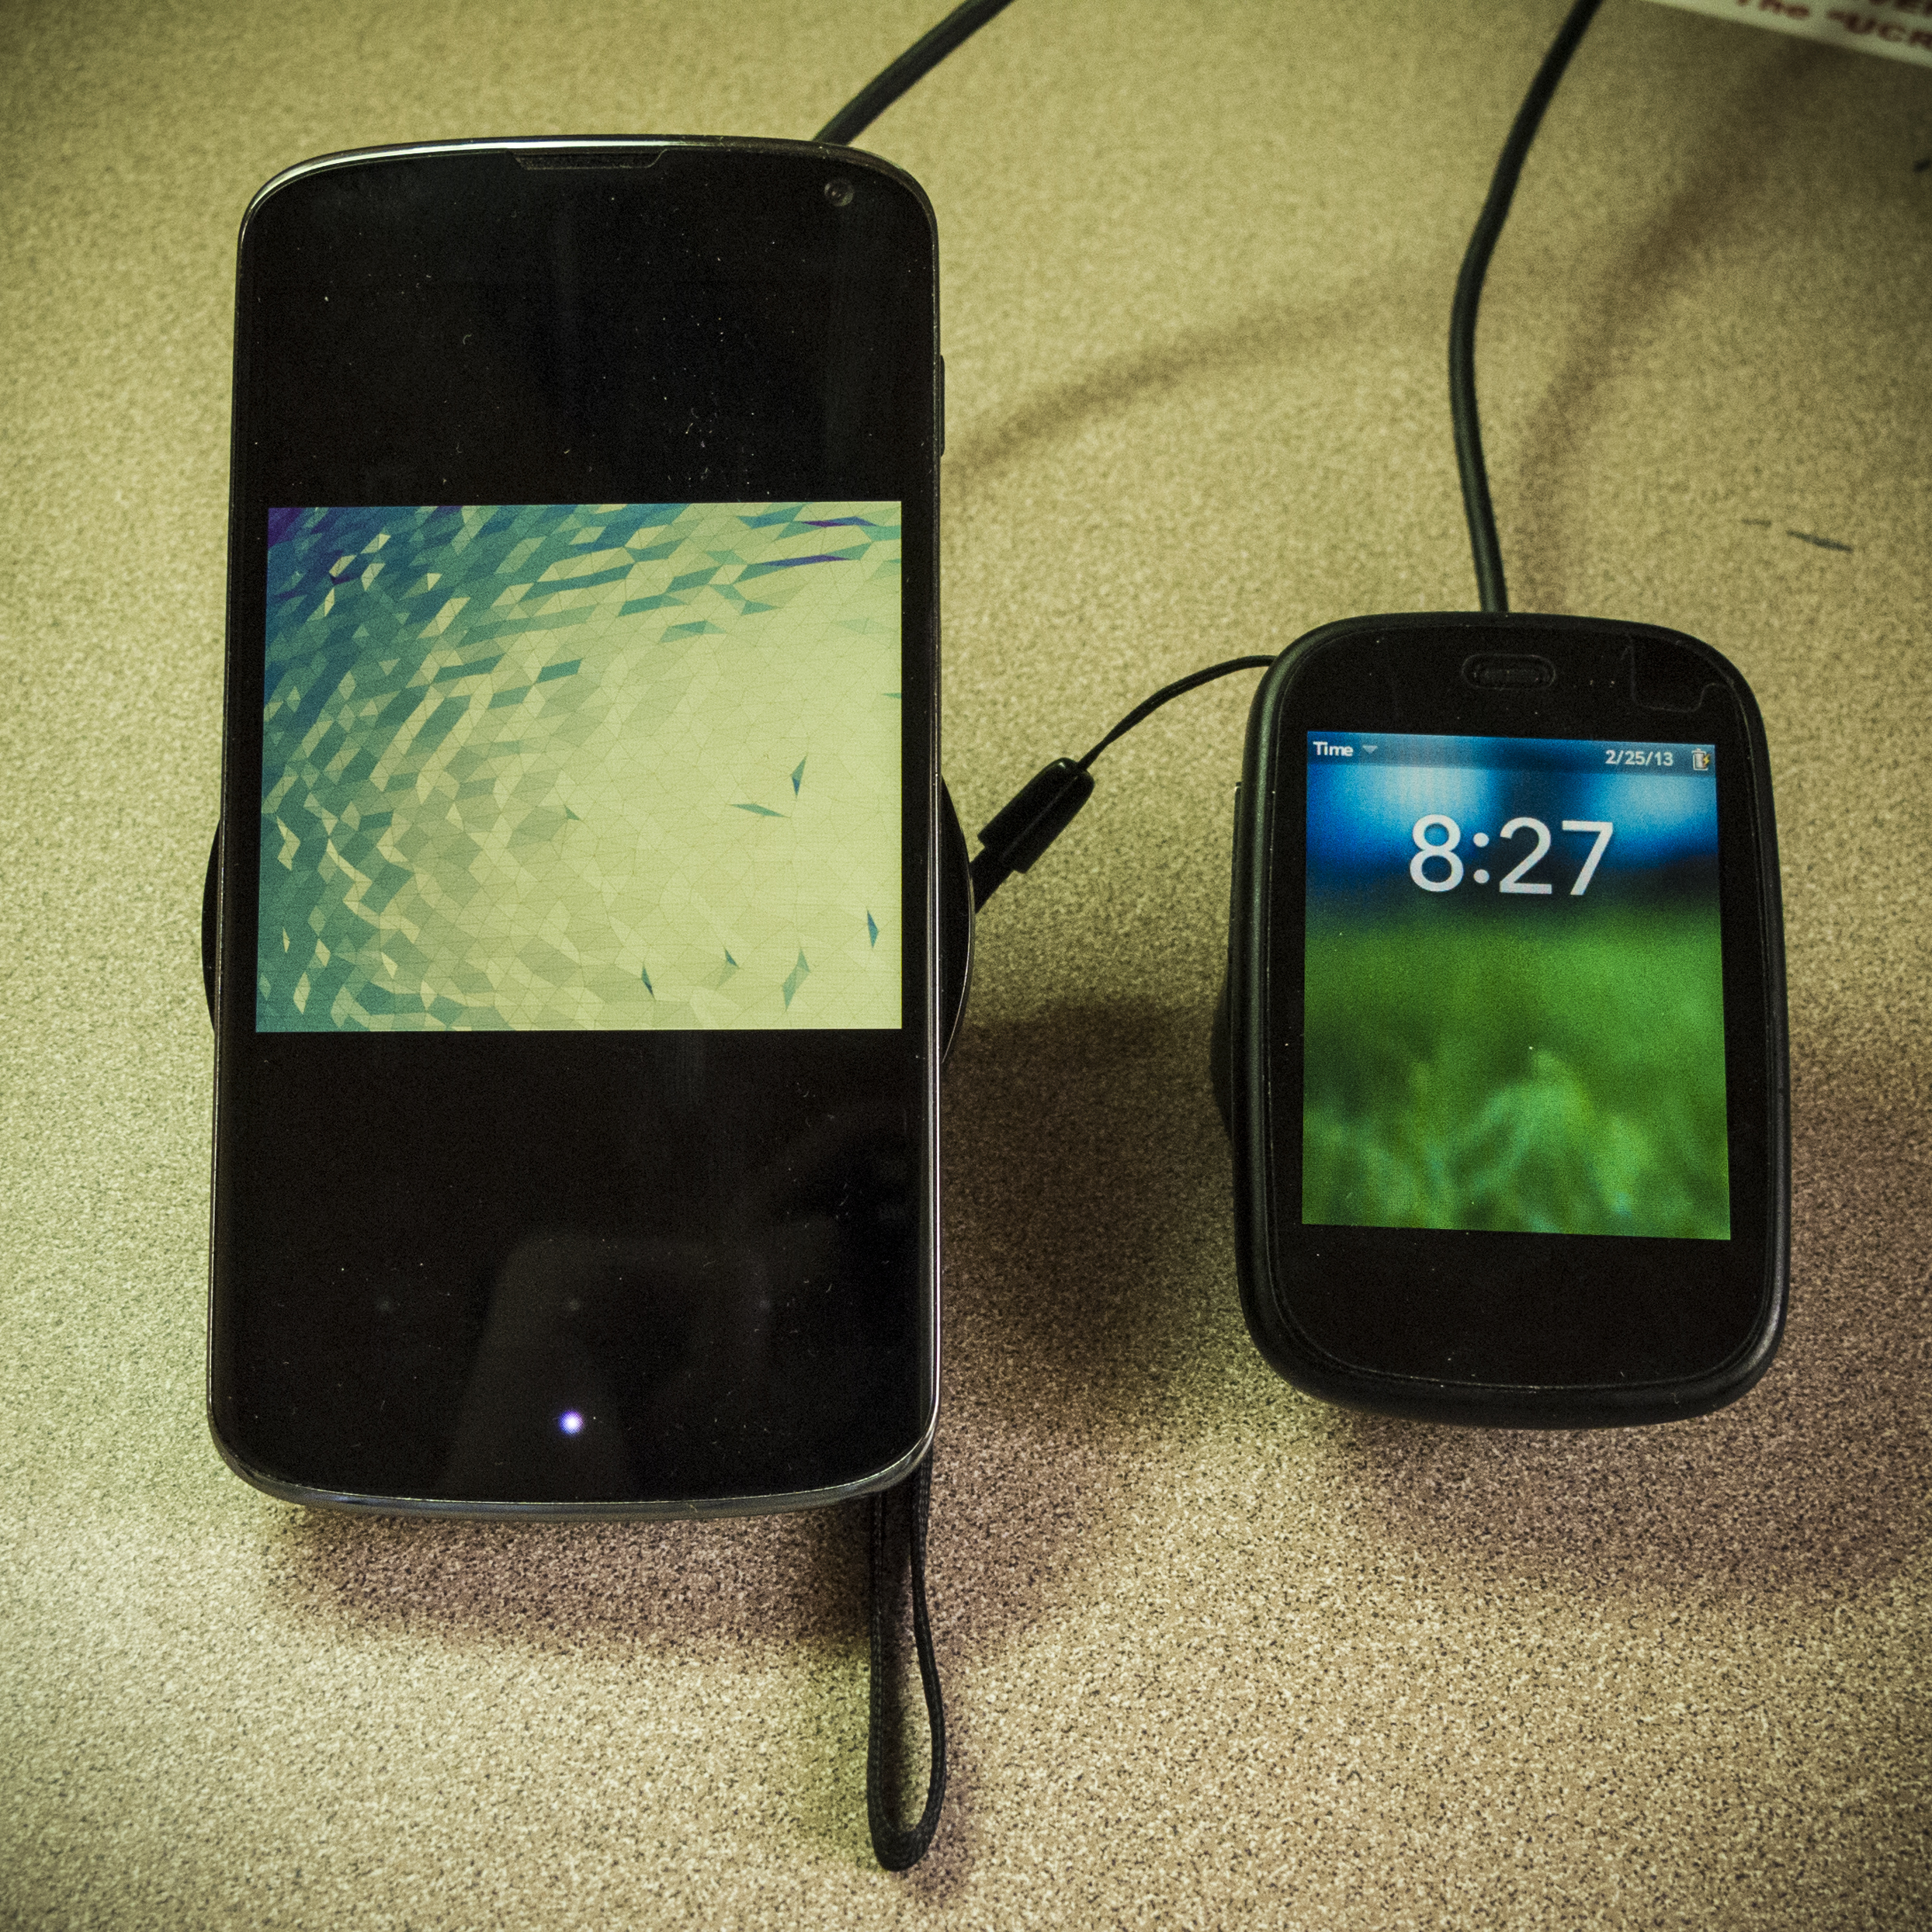 ｢点金石｣ 上的 Veer 和旁边的 Nexus 4